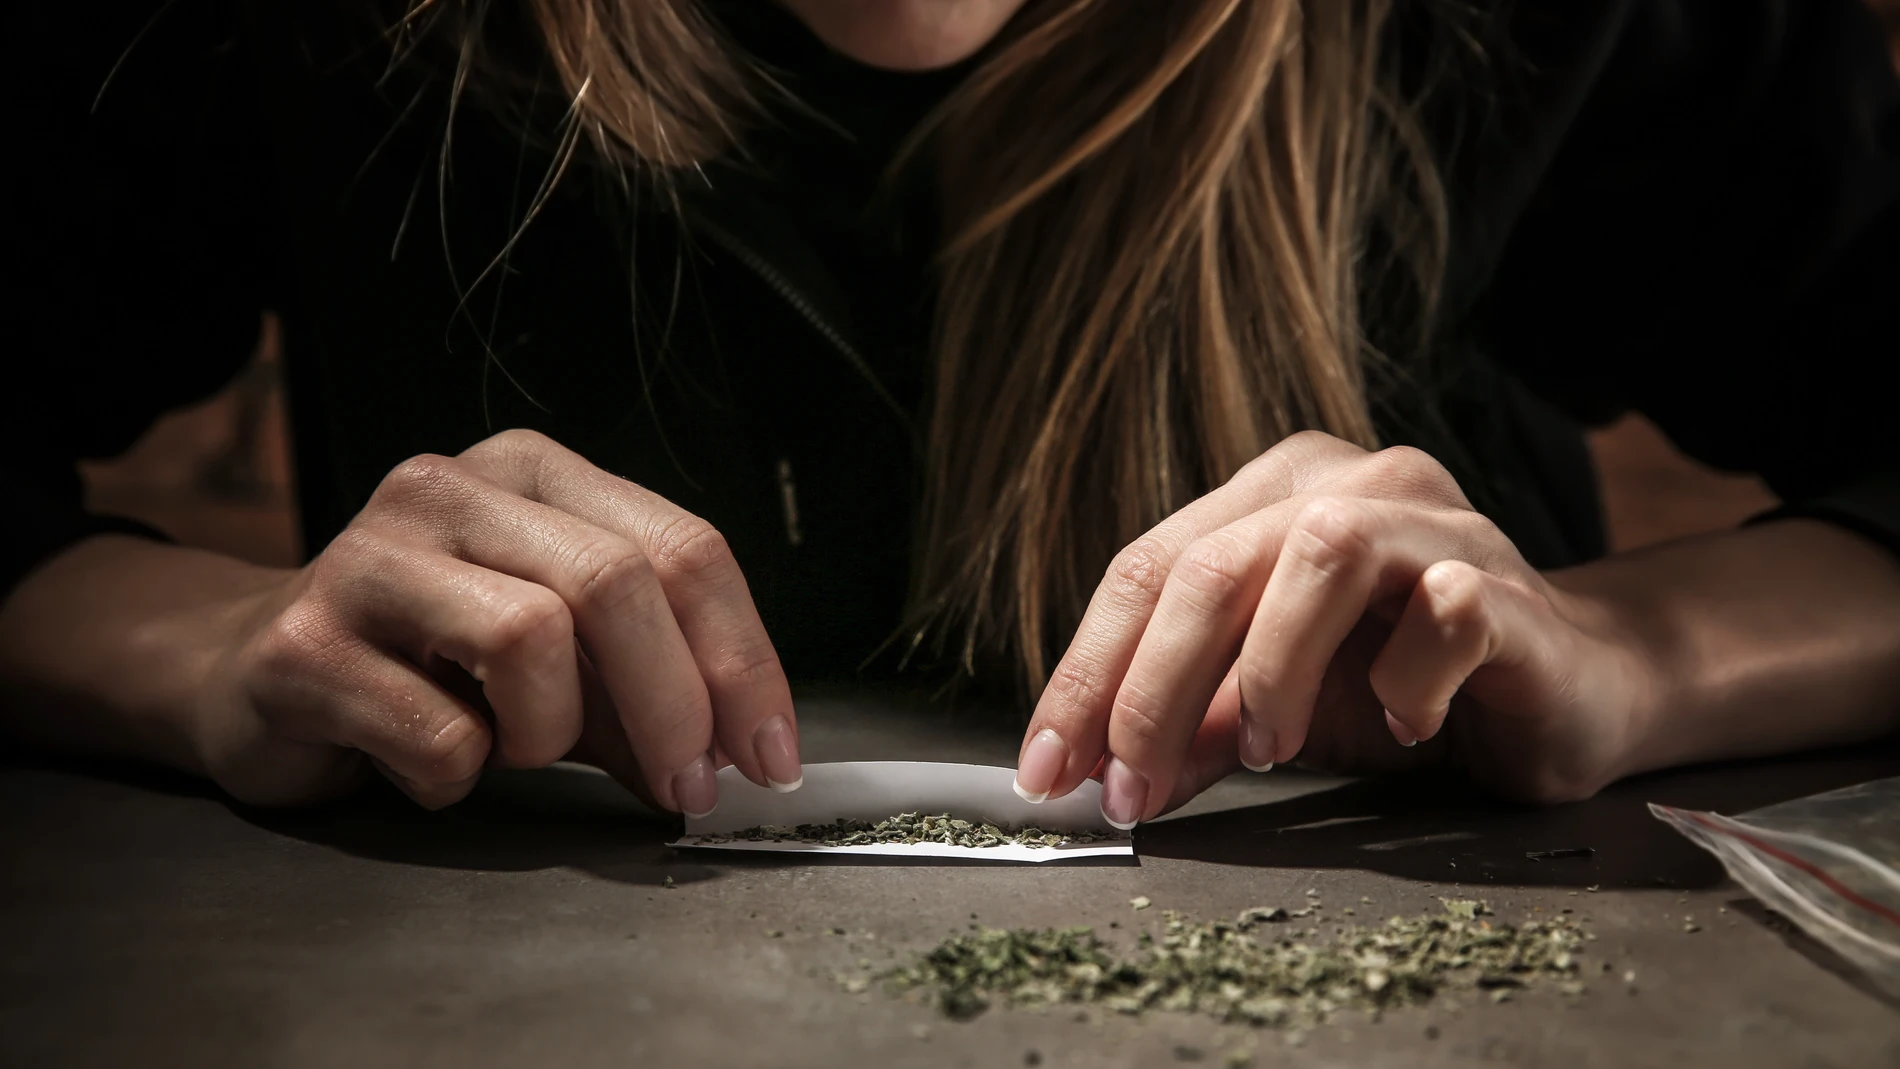 El consumo de cannabis tiene repercusiones en todas las franjas de edad, pero especialmente a partir de los 40 años